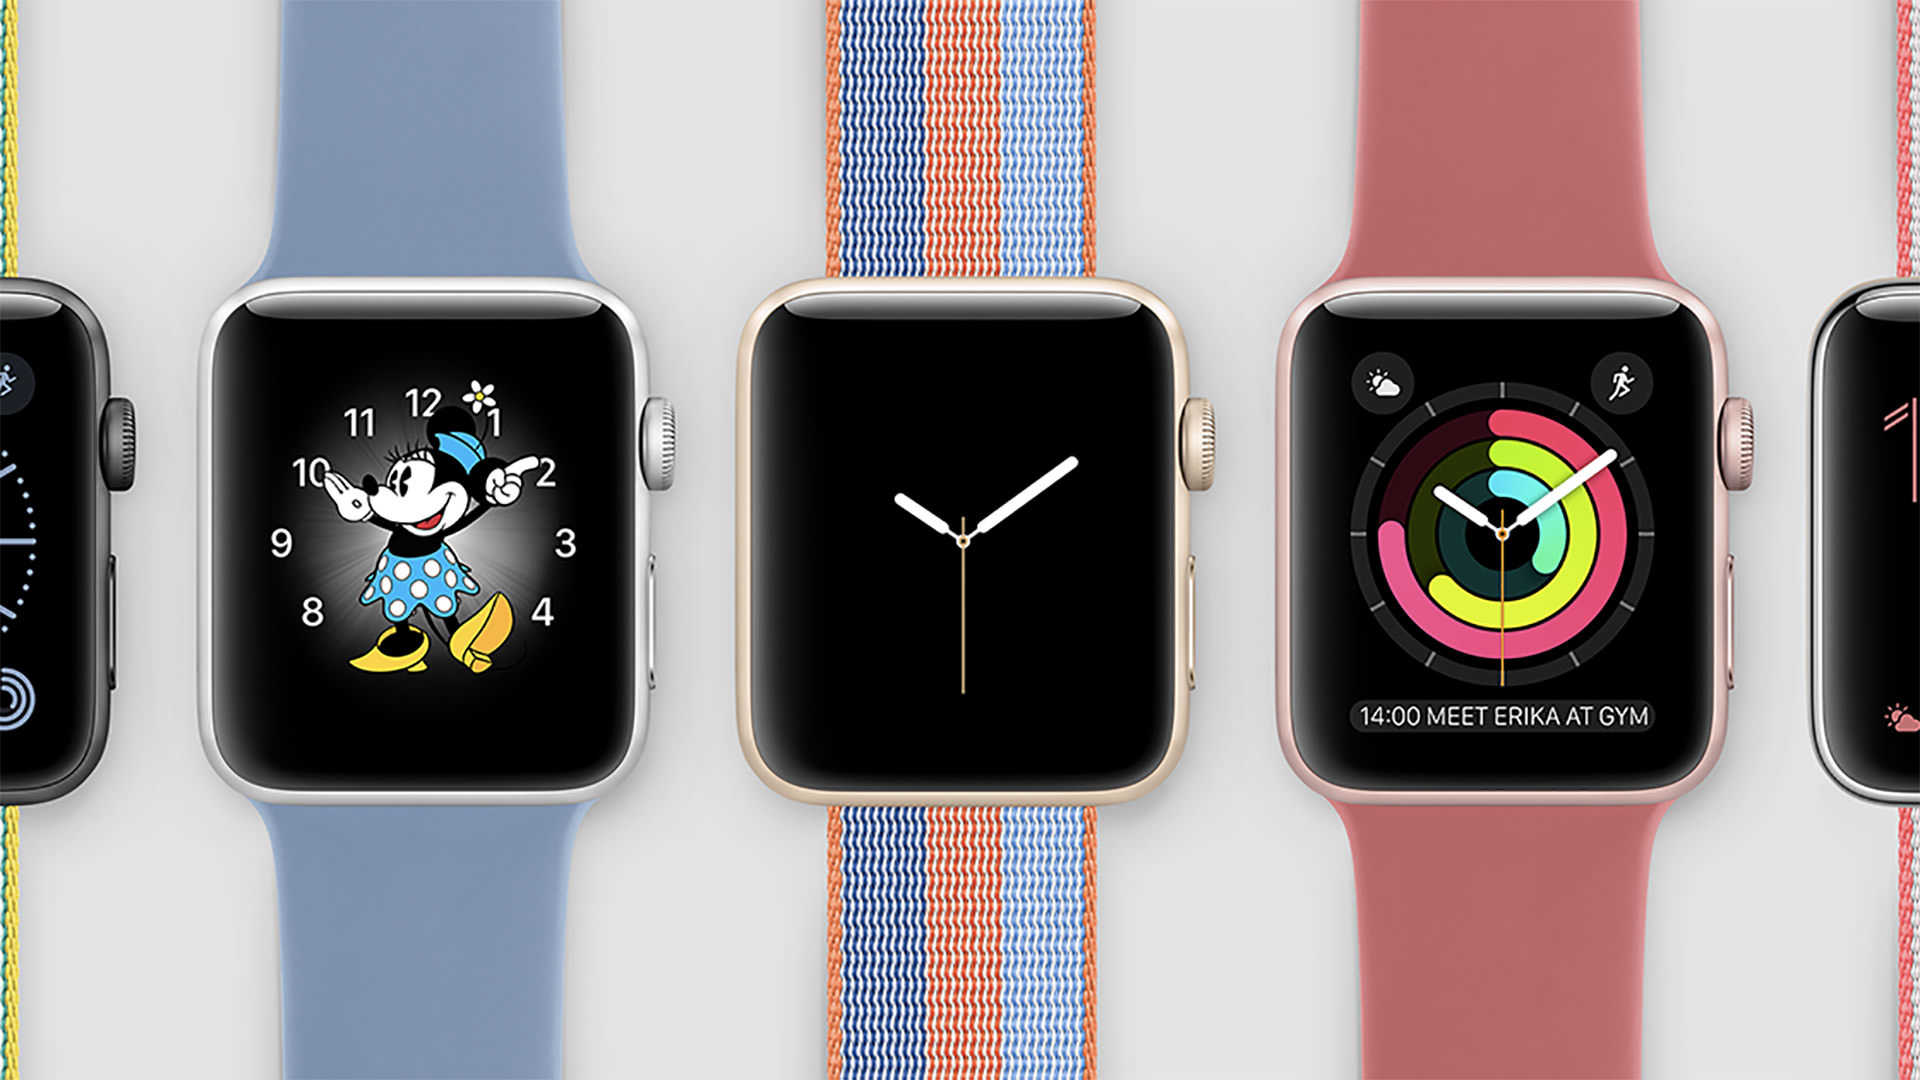 Бесплатная заставка на смарт часы. Apple watch 3. Часы эпл вотч 8. Apple watch Series 3 38mm. Часы эпл вотч 2.